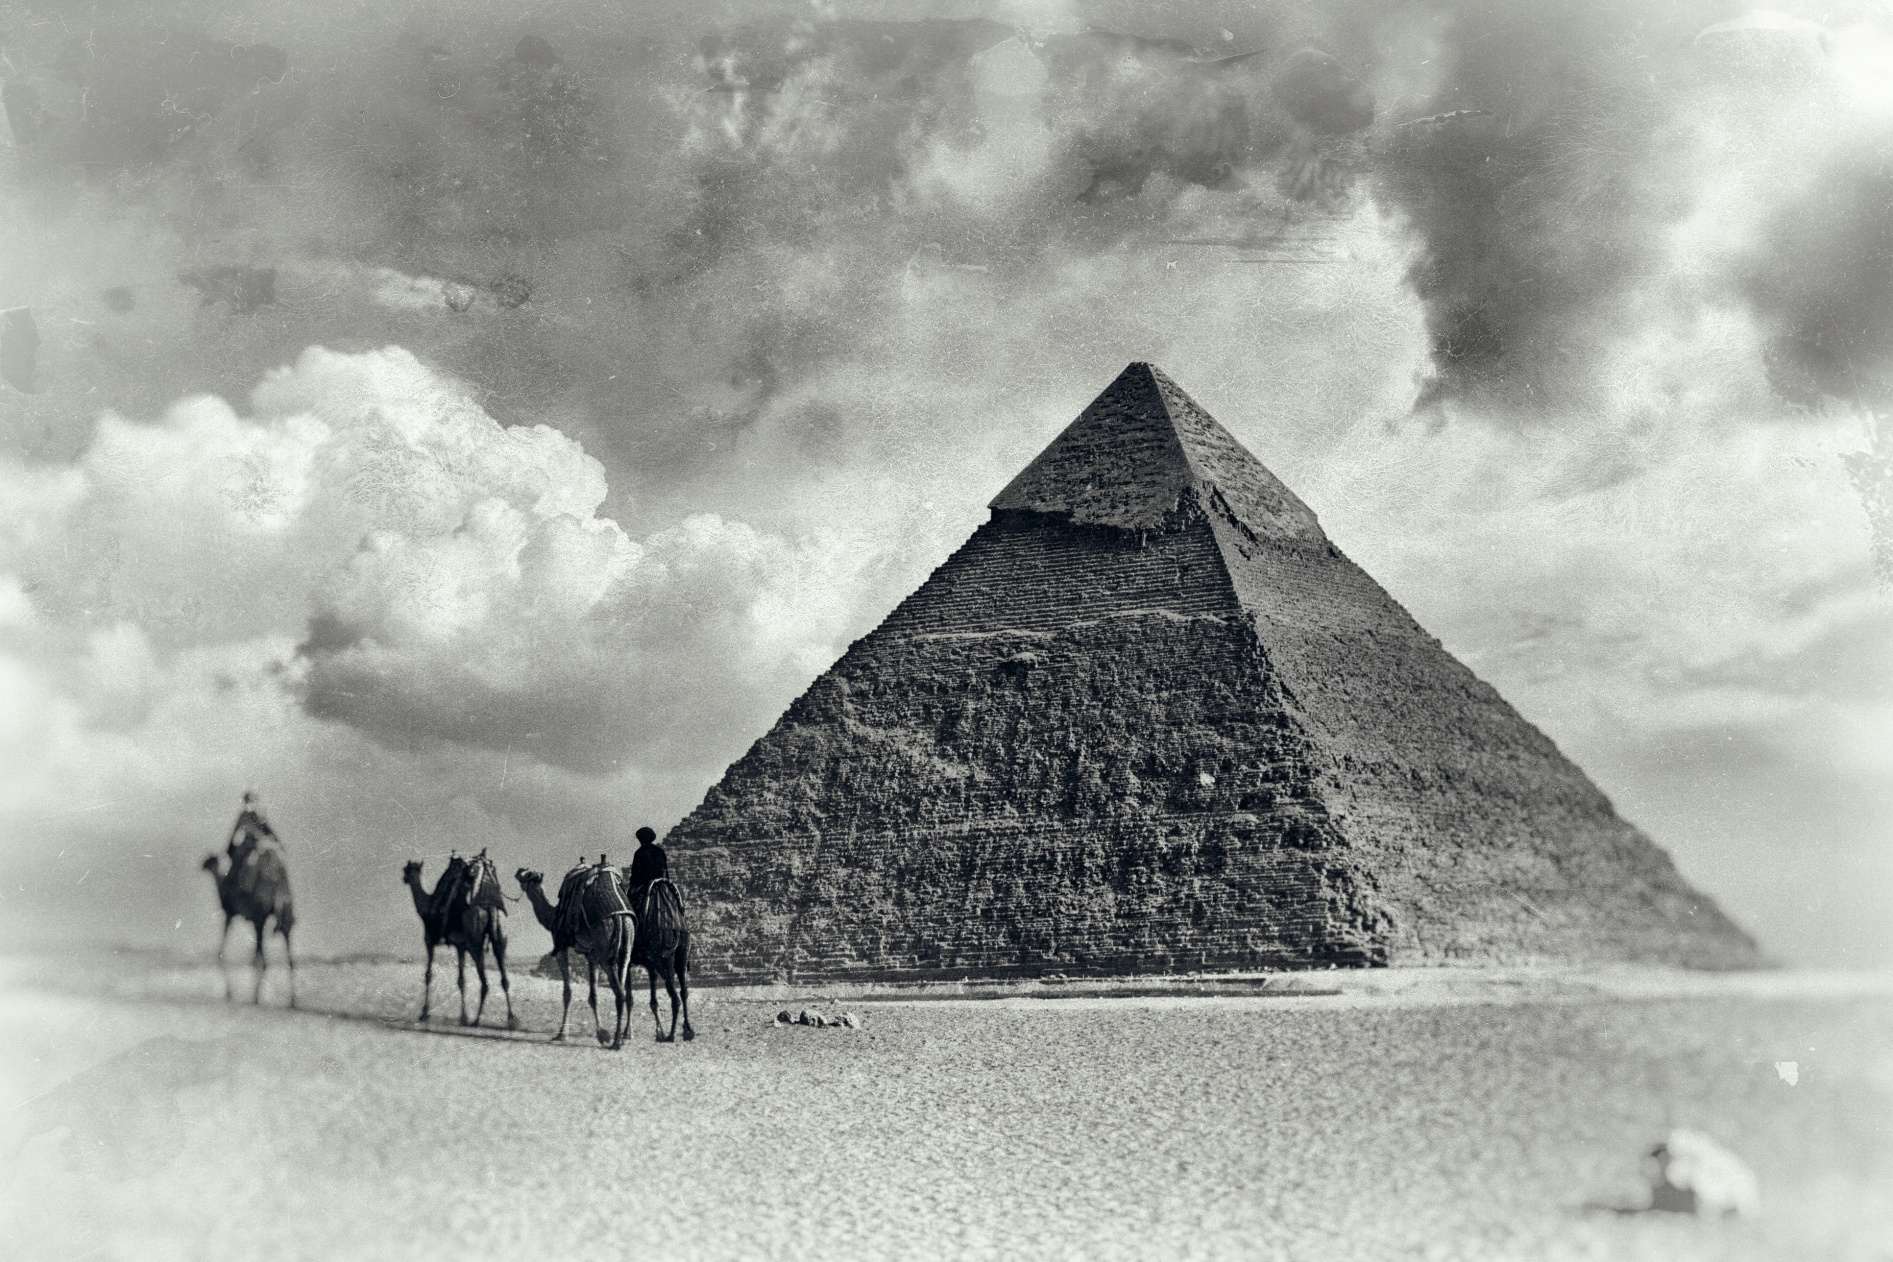 La grande pyramide de Gizeh